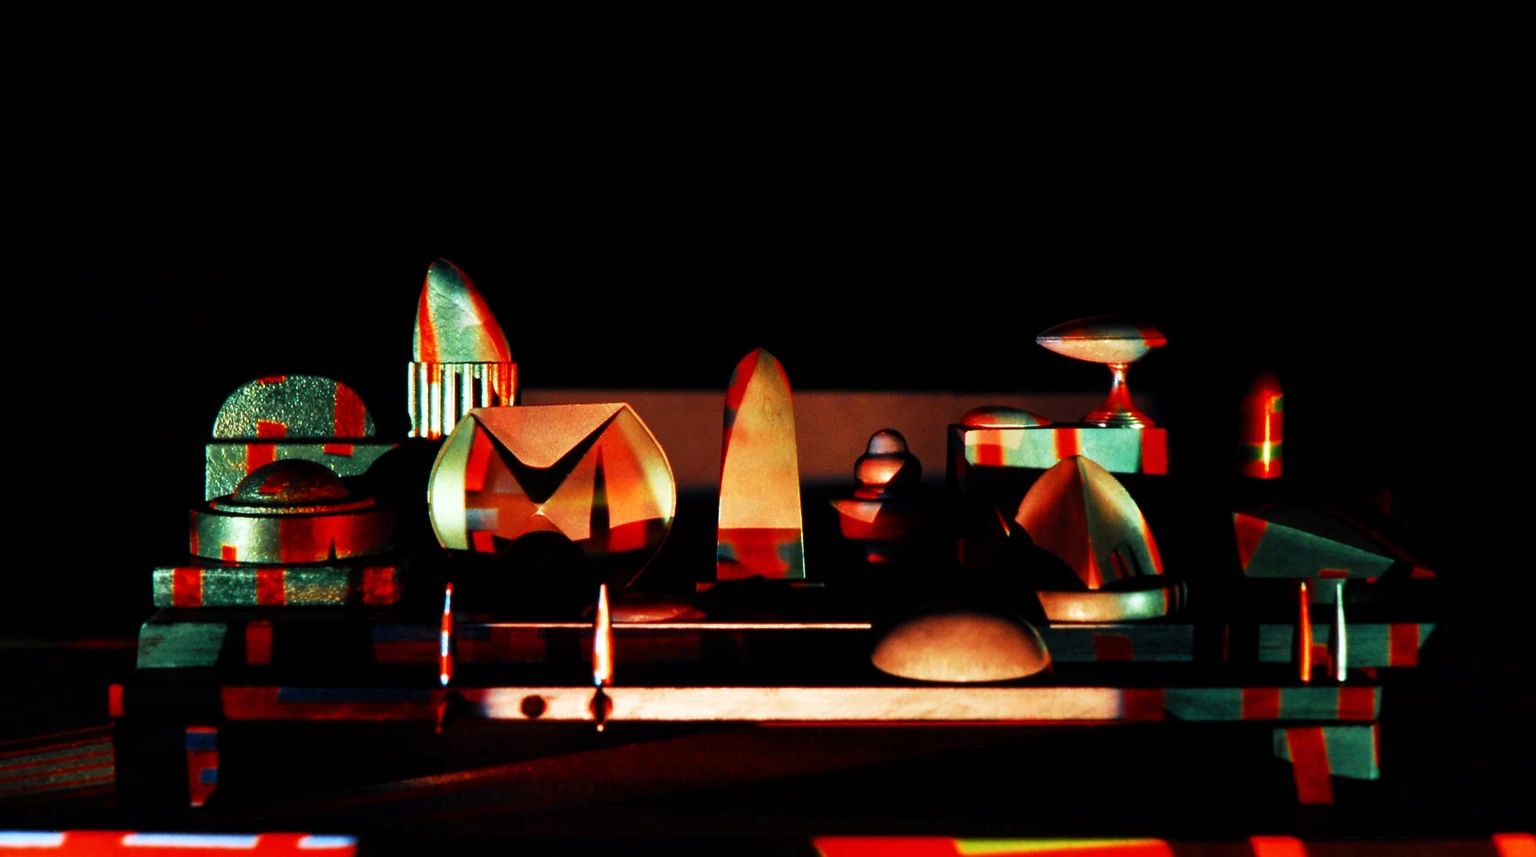 Scene, 1988 - experimental lighting